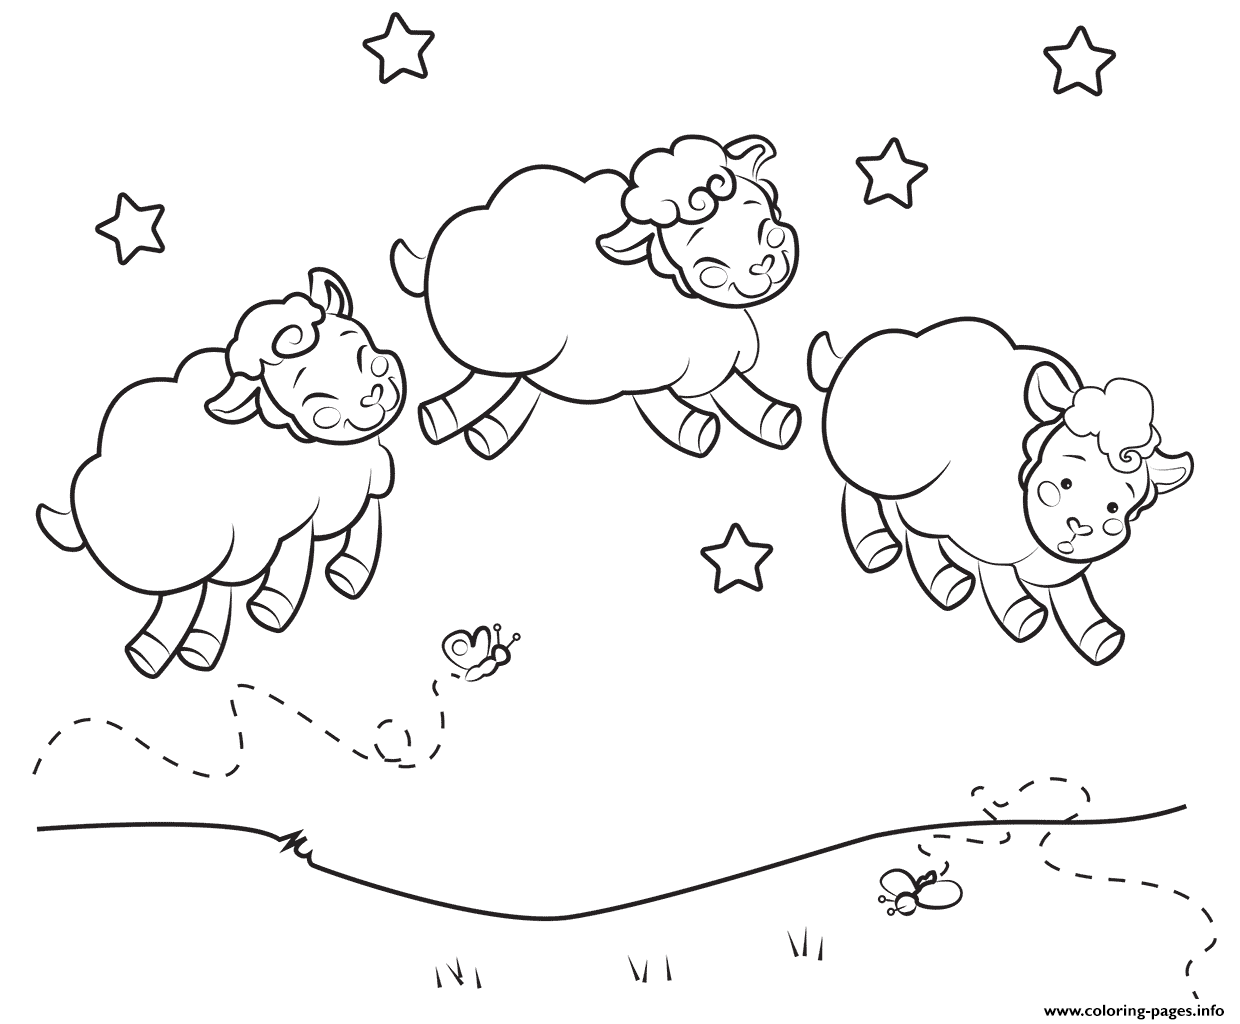 Three Sleepy Sheep To Print And Color Coloring page Printable